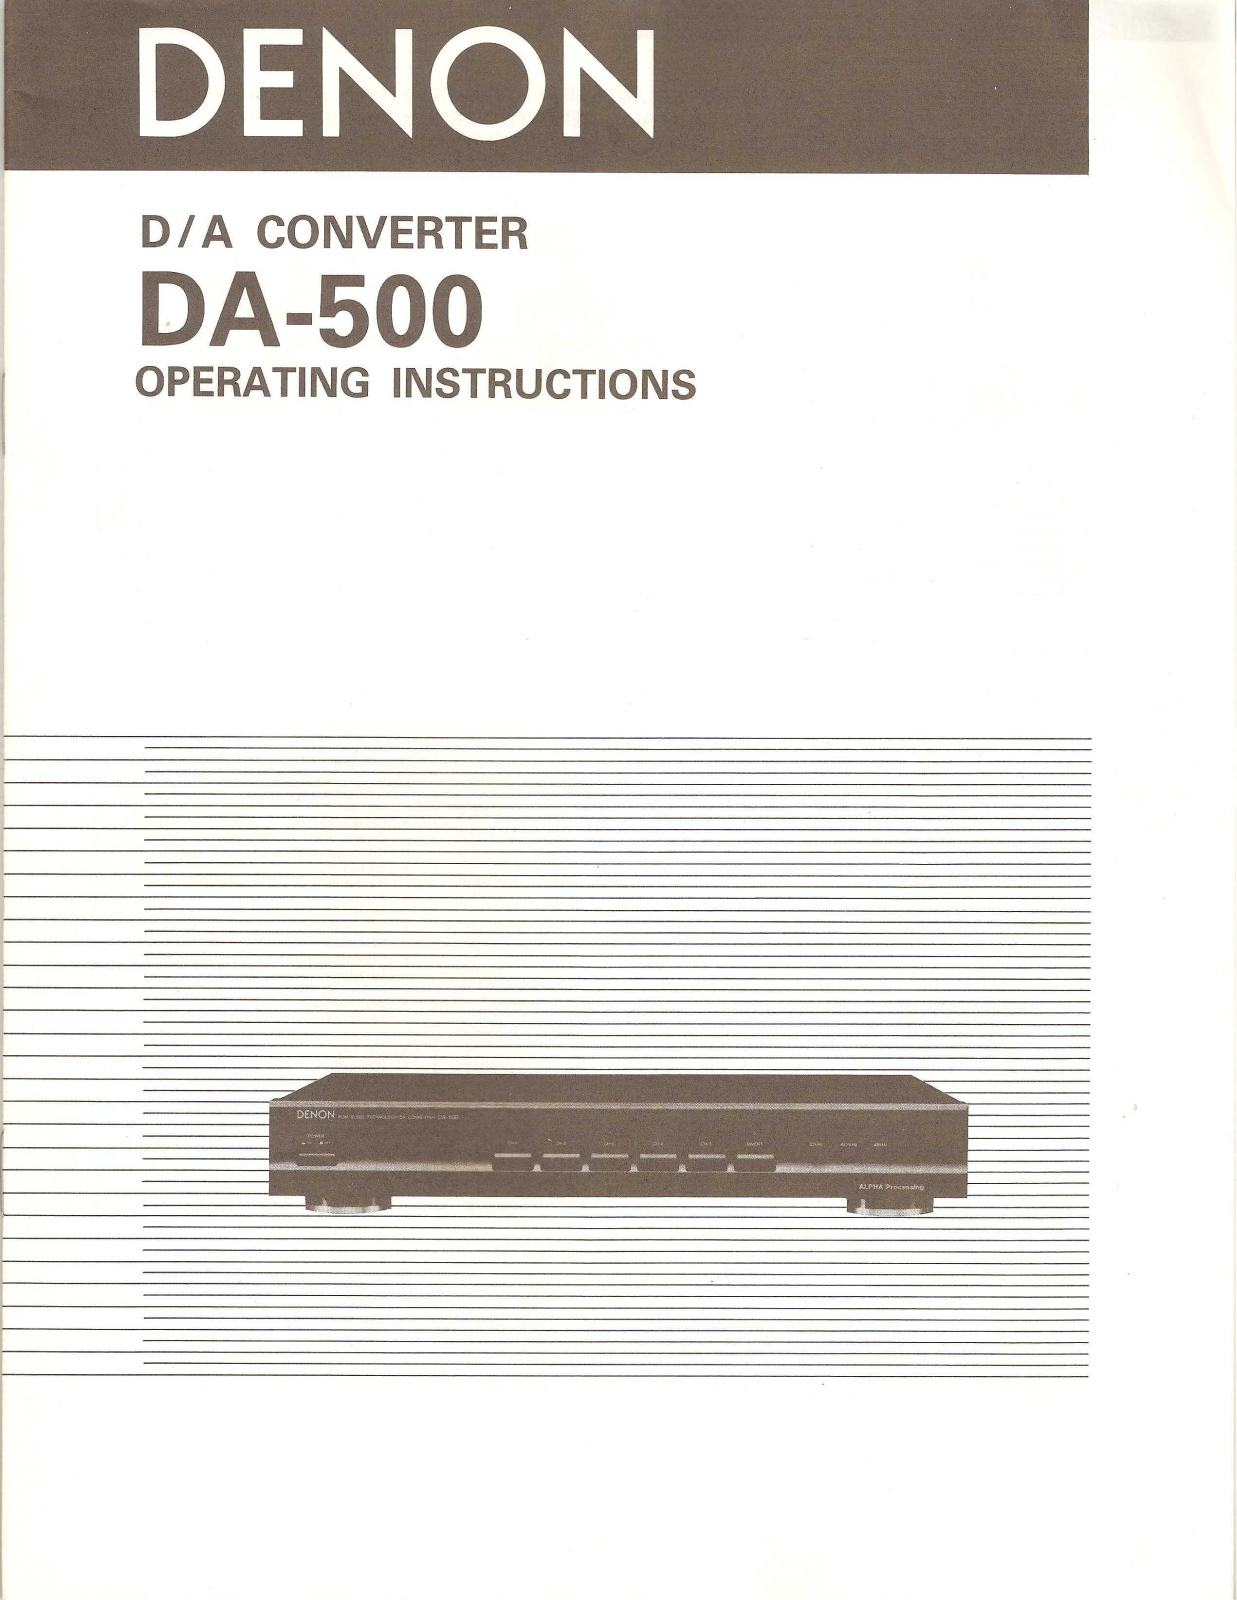 Denon DA-500 Manual